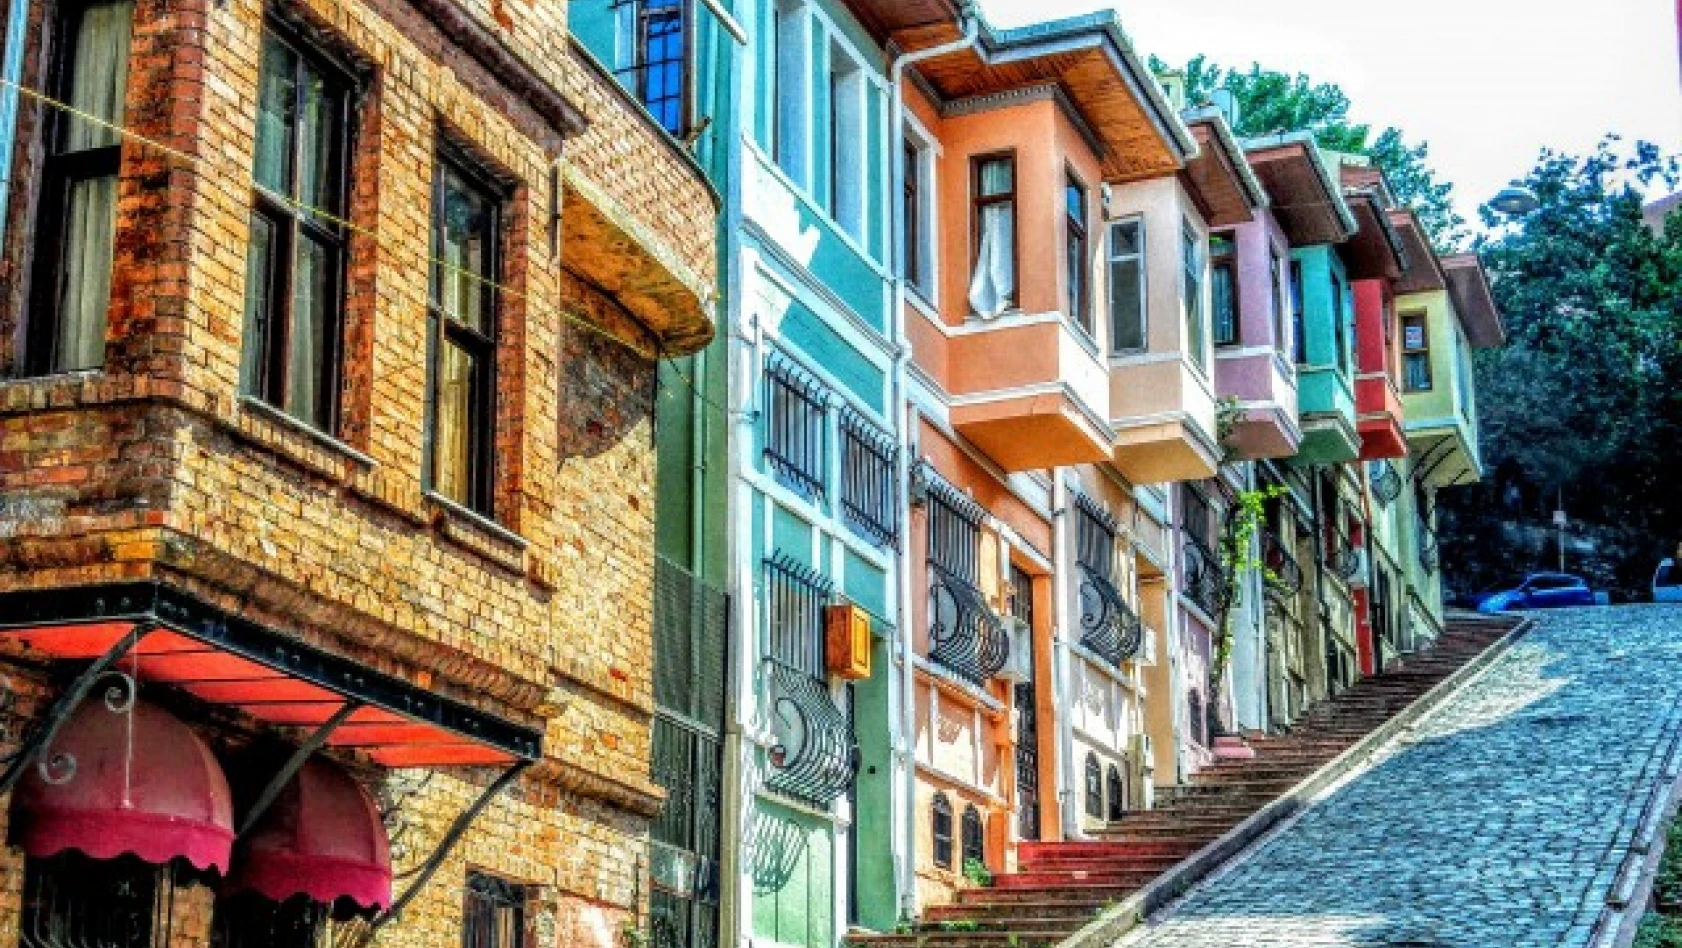 İstanbul'un Tarihi semti. Fener. Kafeler caddesi ve kiremit evleri